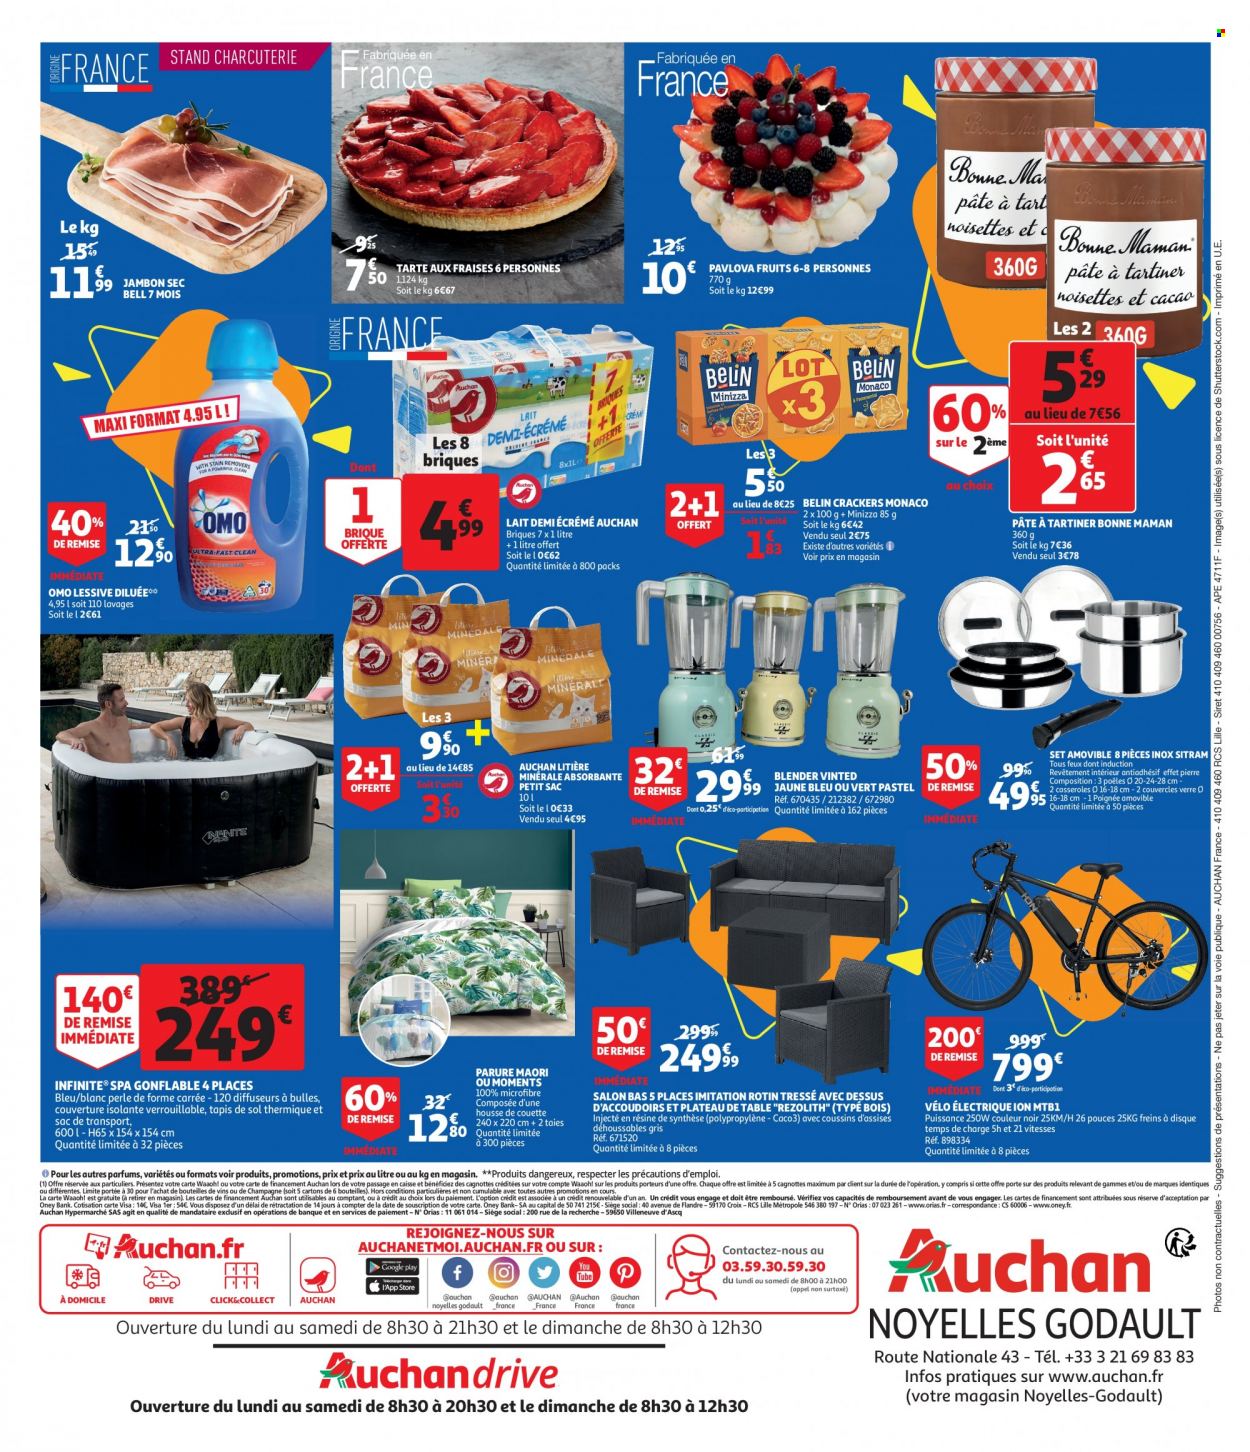 thumbnail - Catalogue Auchan - 26/05/2022 - 28/05/2022 - Produits soldés - poêle, vélo, tarte, jambon, jambon sec, pâte à tartiner, crackers, vin, lessive, OMO, casserole, couette, housse de couette, plaid, taie, litière, blender, vélo électrique, sac de transport. Page 2.